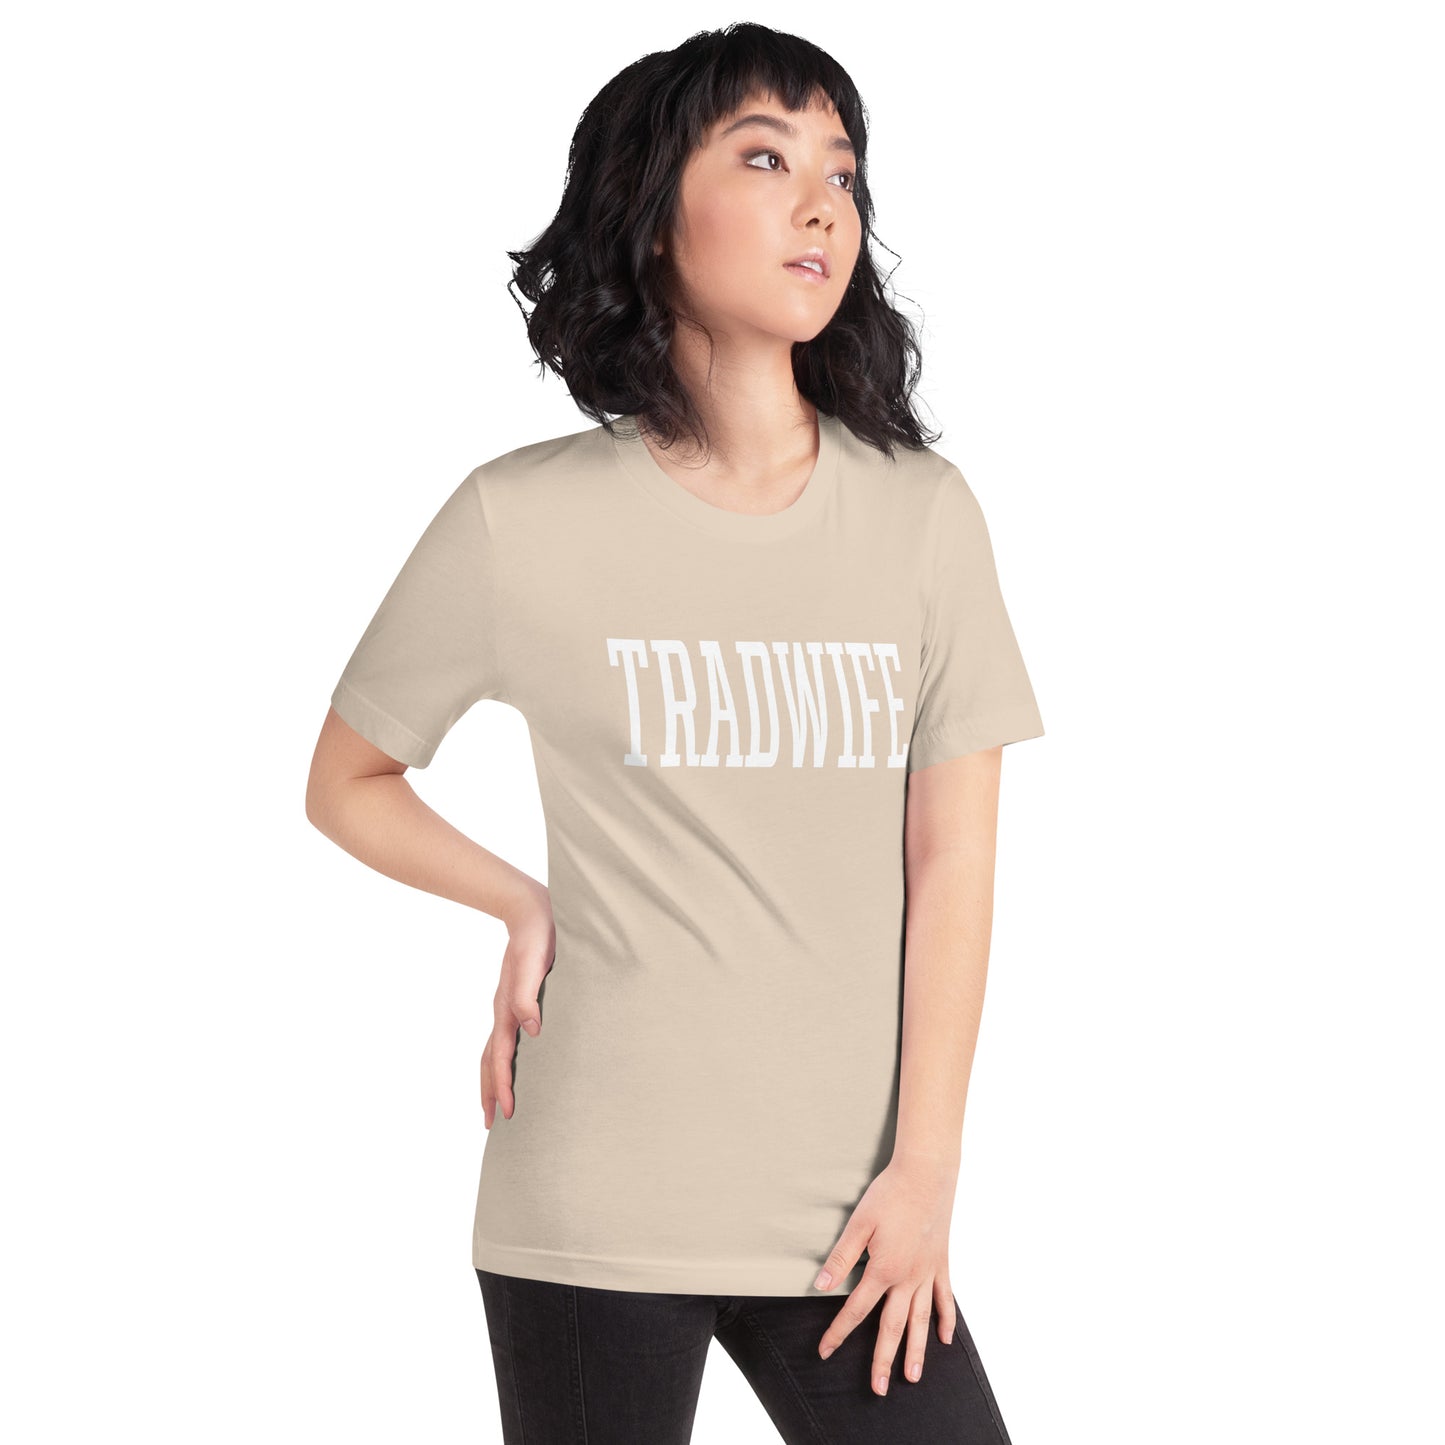 Tradwife T-shirt